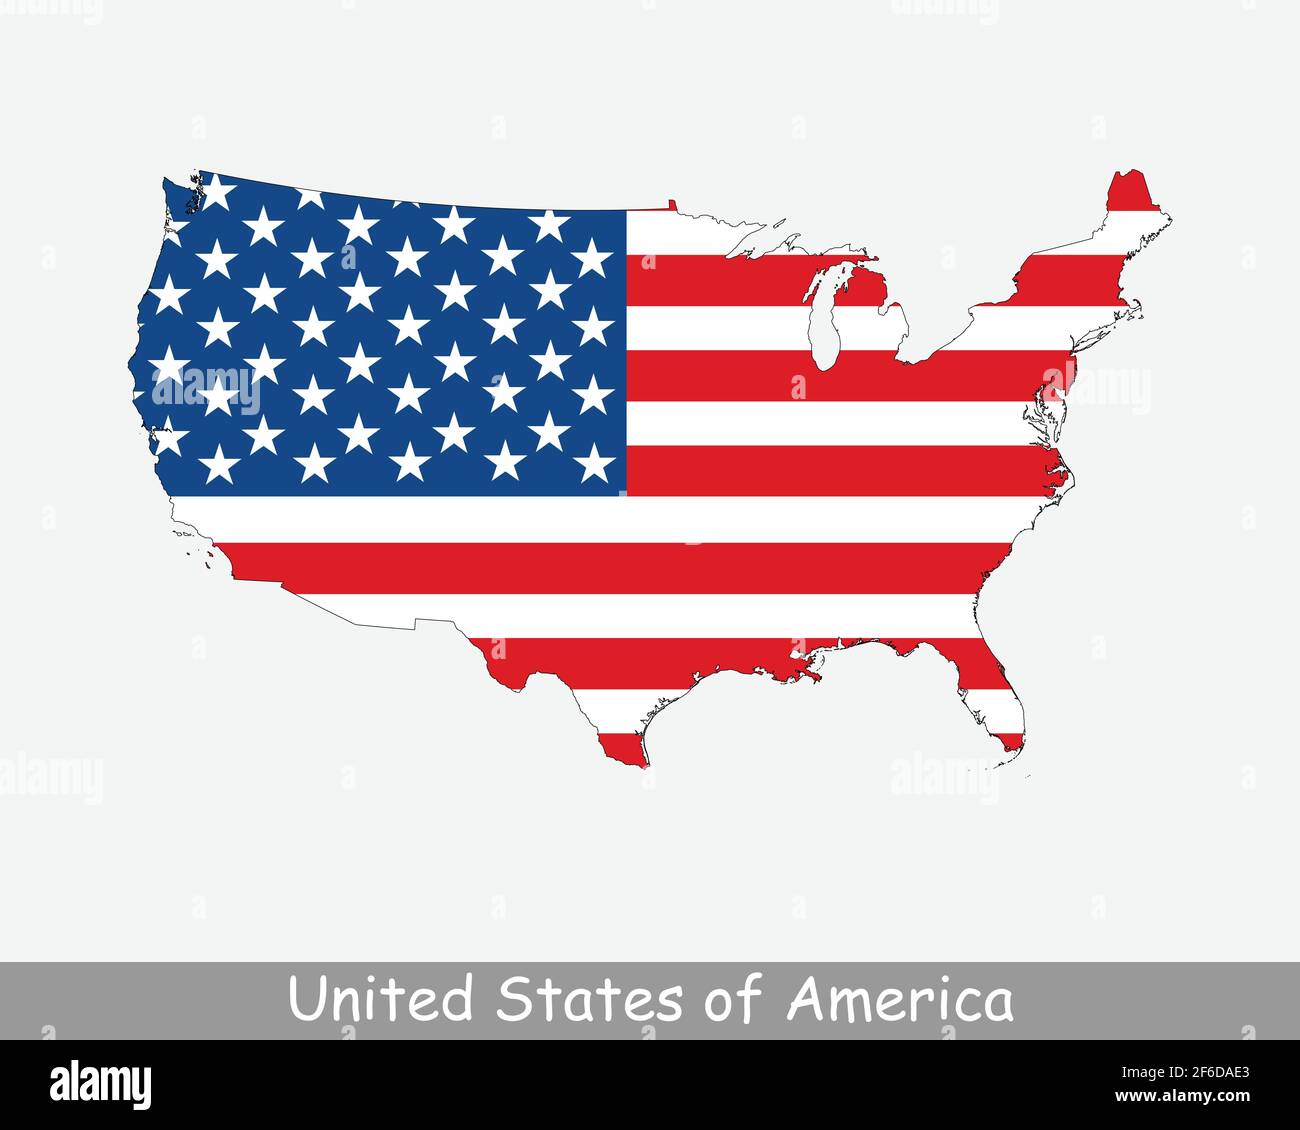 Vereinigte Staaten von Amerika USA Flagge Karte. Karte der USA mit der amerikanischen Nationalflagge isoliert auf weißem Hintergrund. Vektorgrafik. Stock Vektor